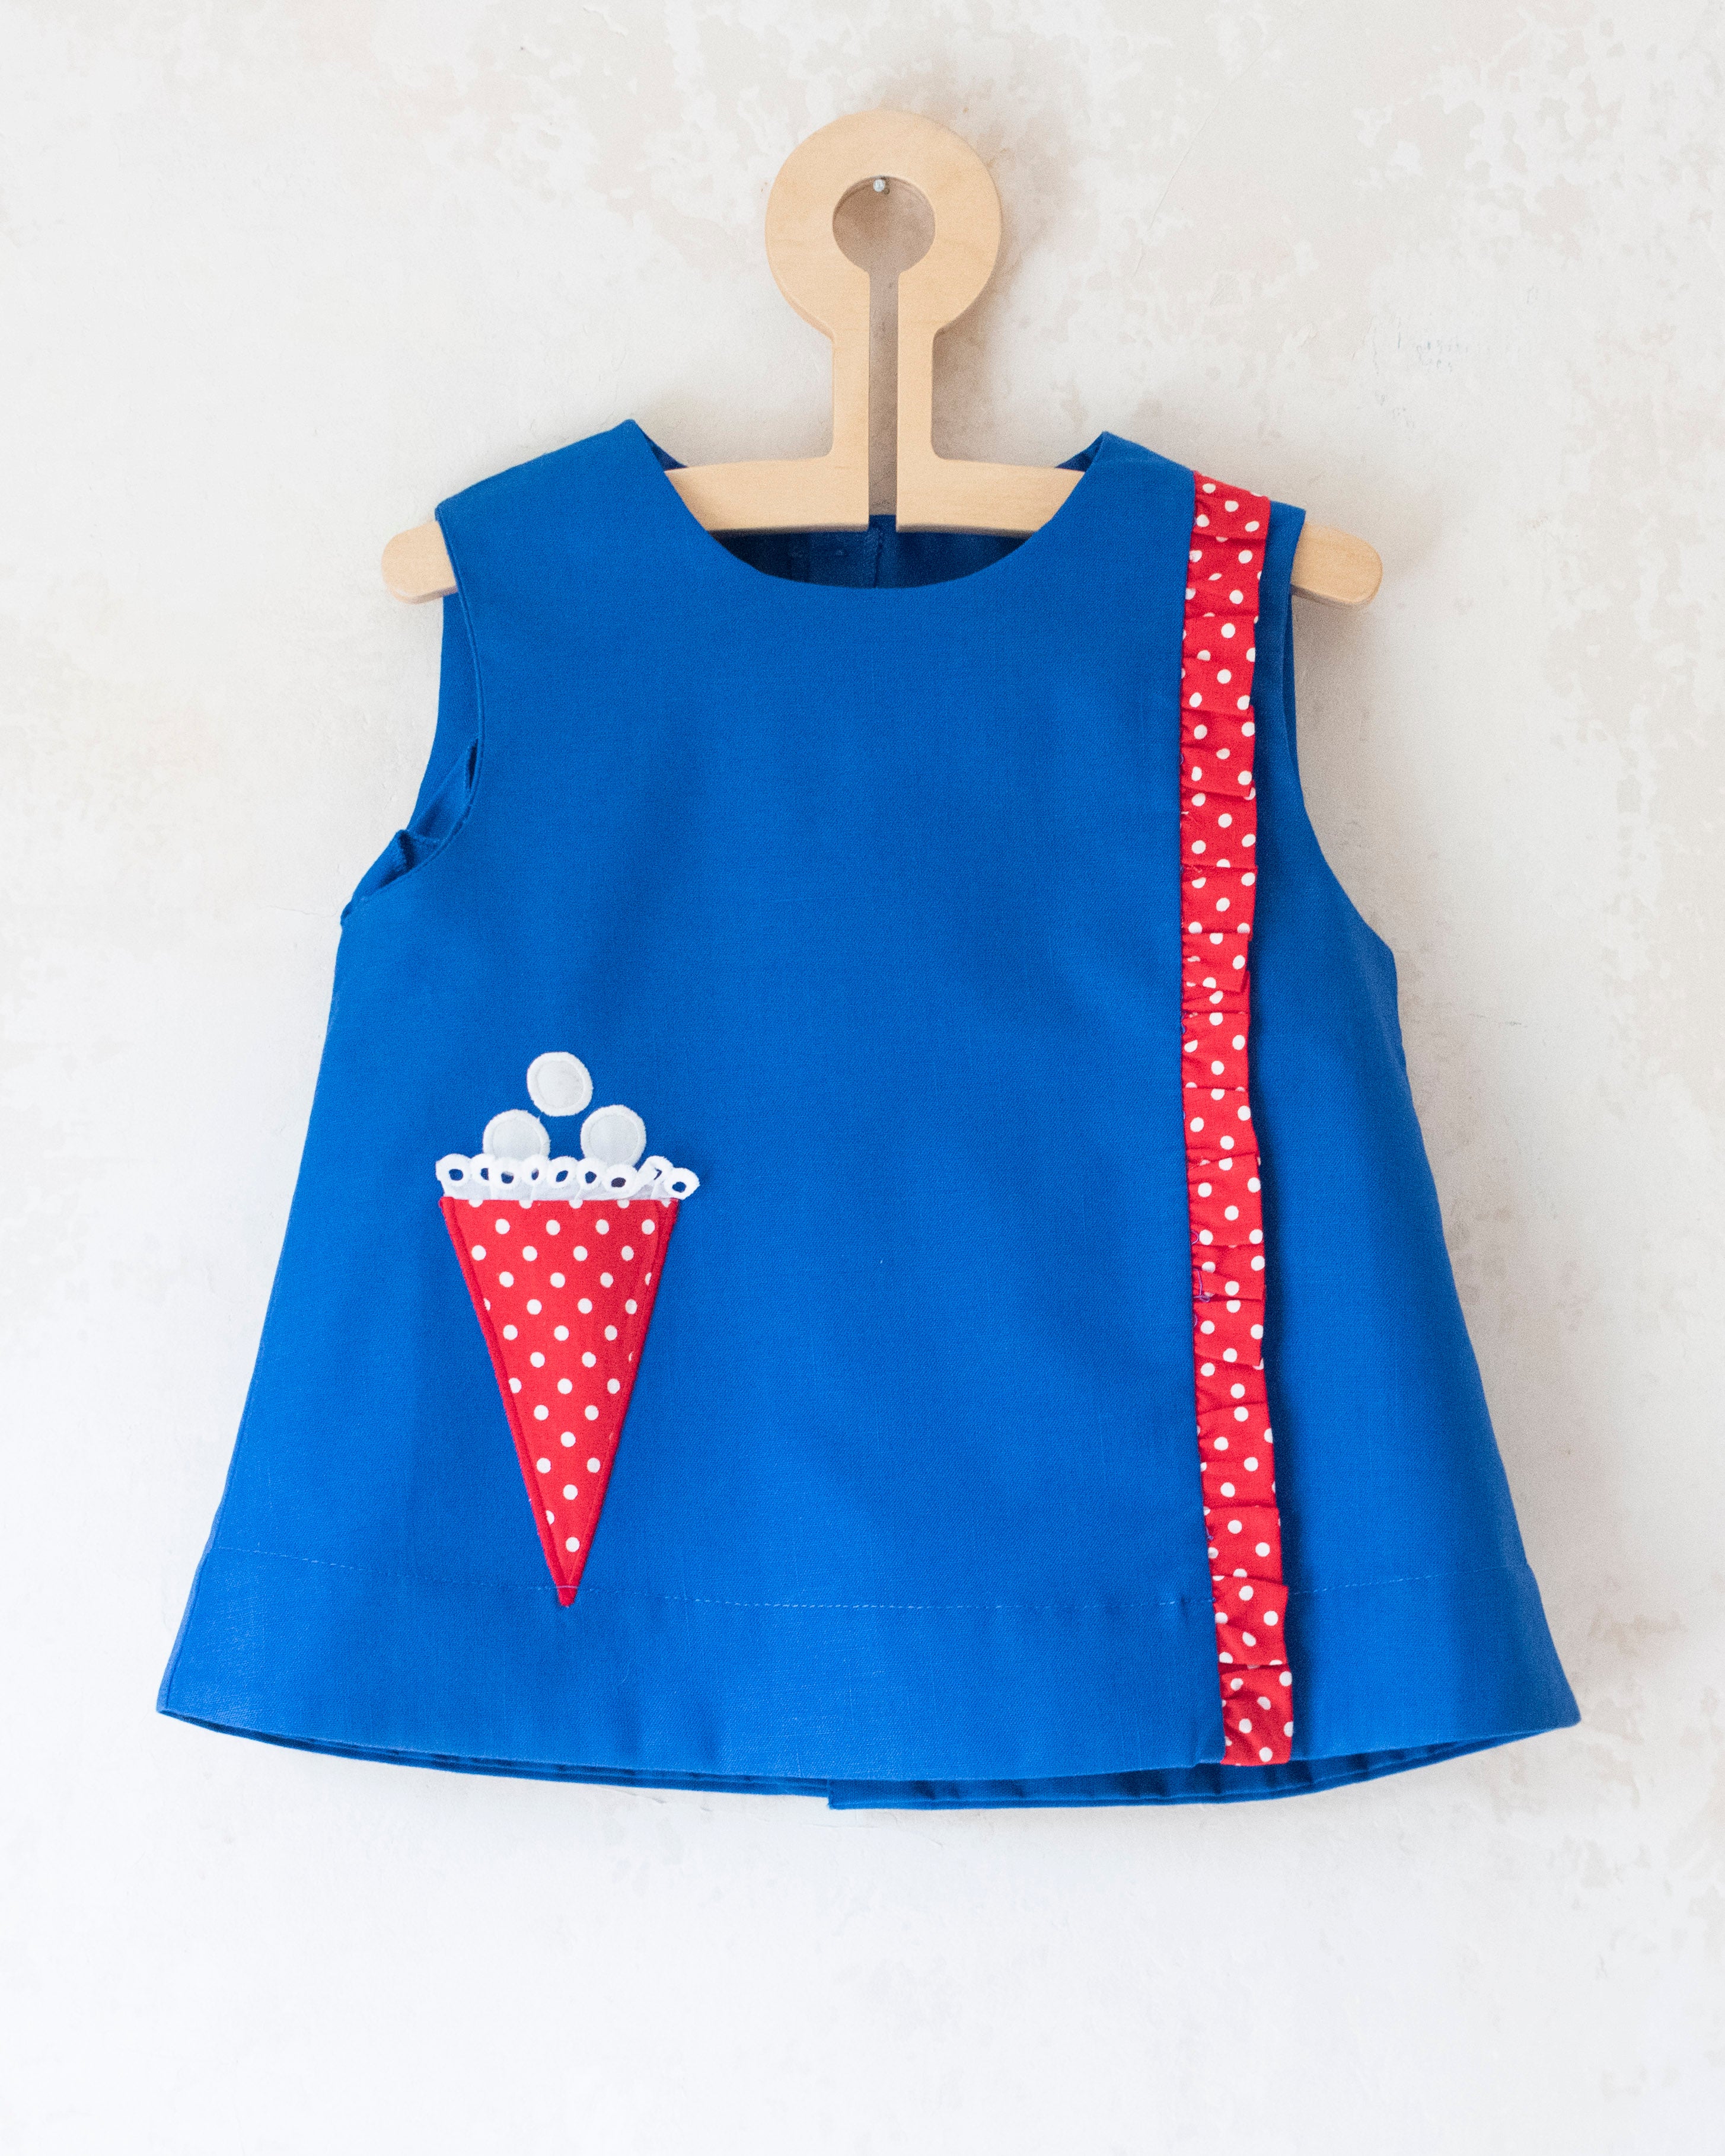 שמלה כחולה עם גלידה | דד סטוק מהסיקסטיז | 12-18 חודשים